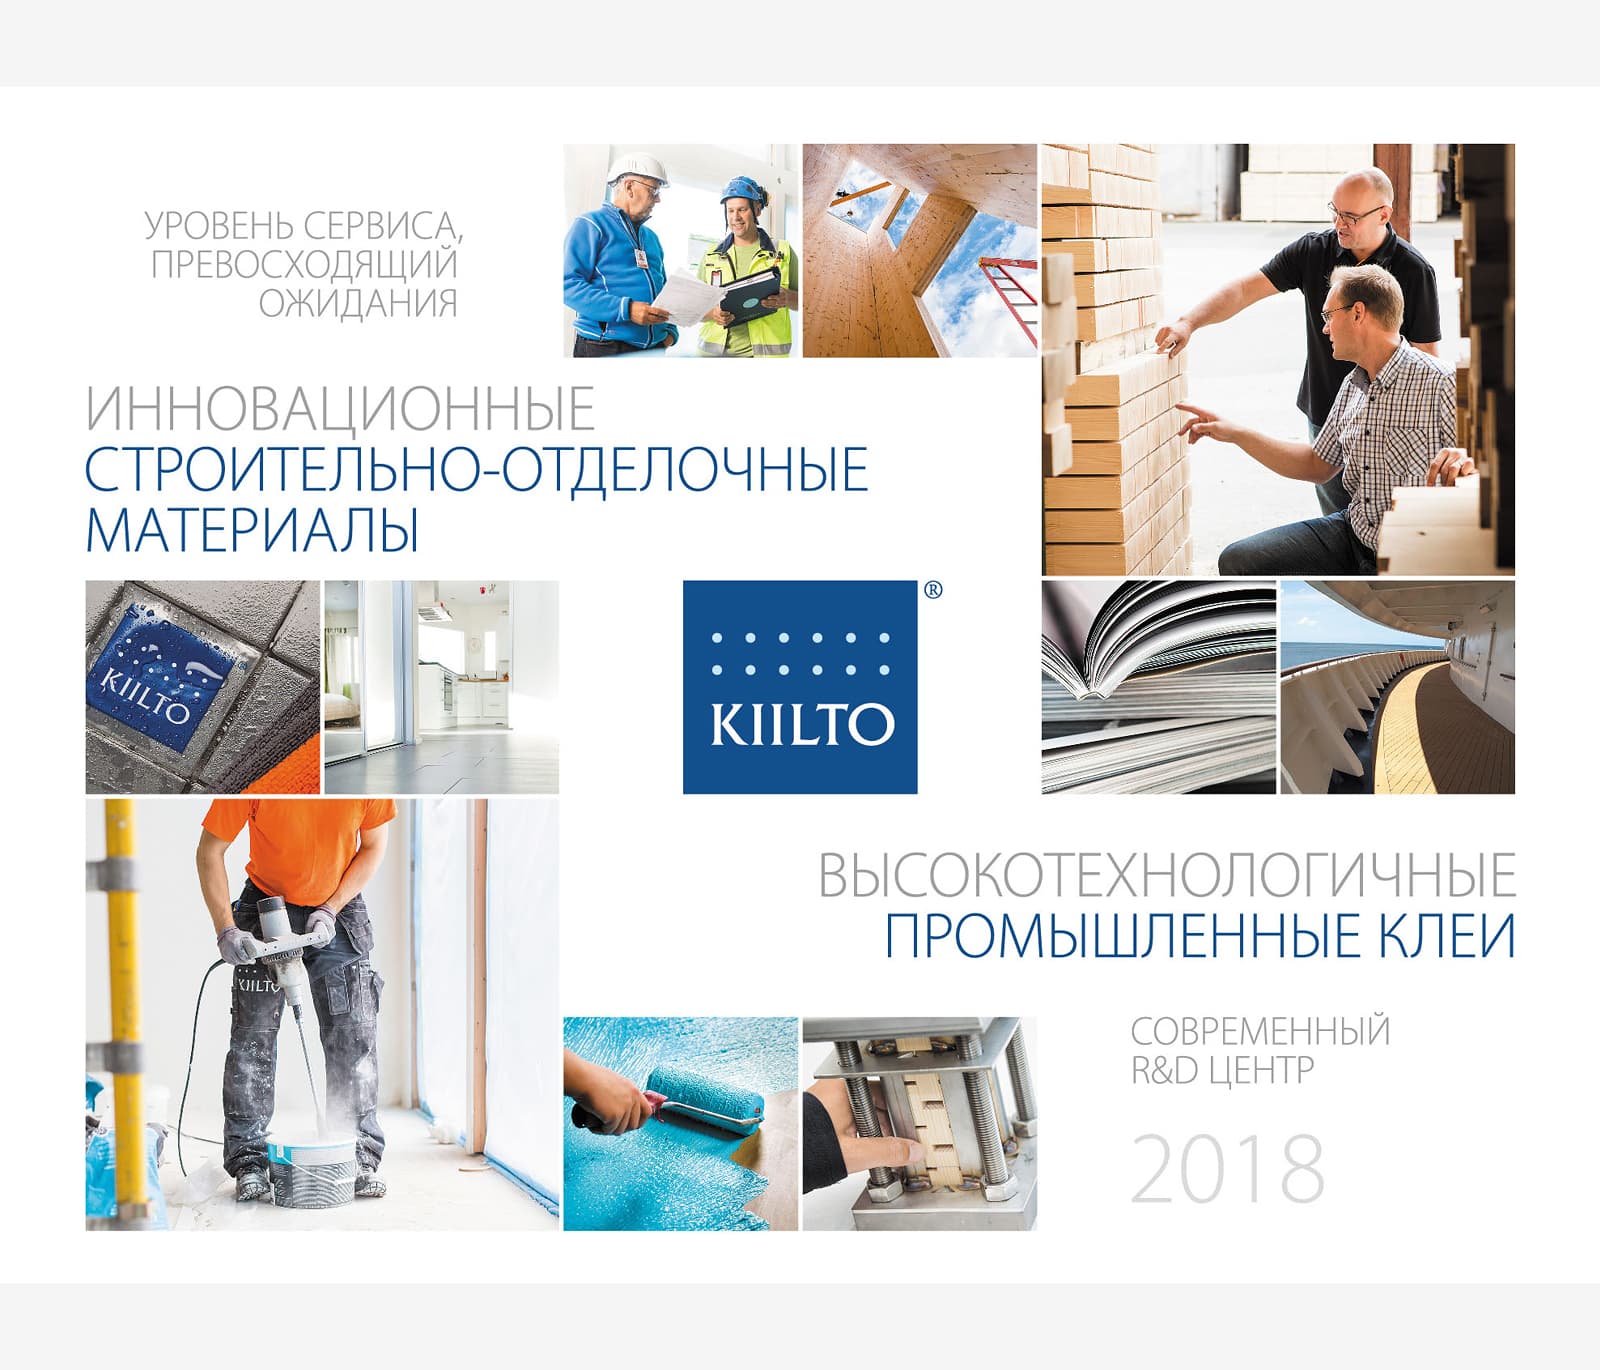 Создали дизайн календаря Трио для компании «KIILTO» на 2018 год